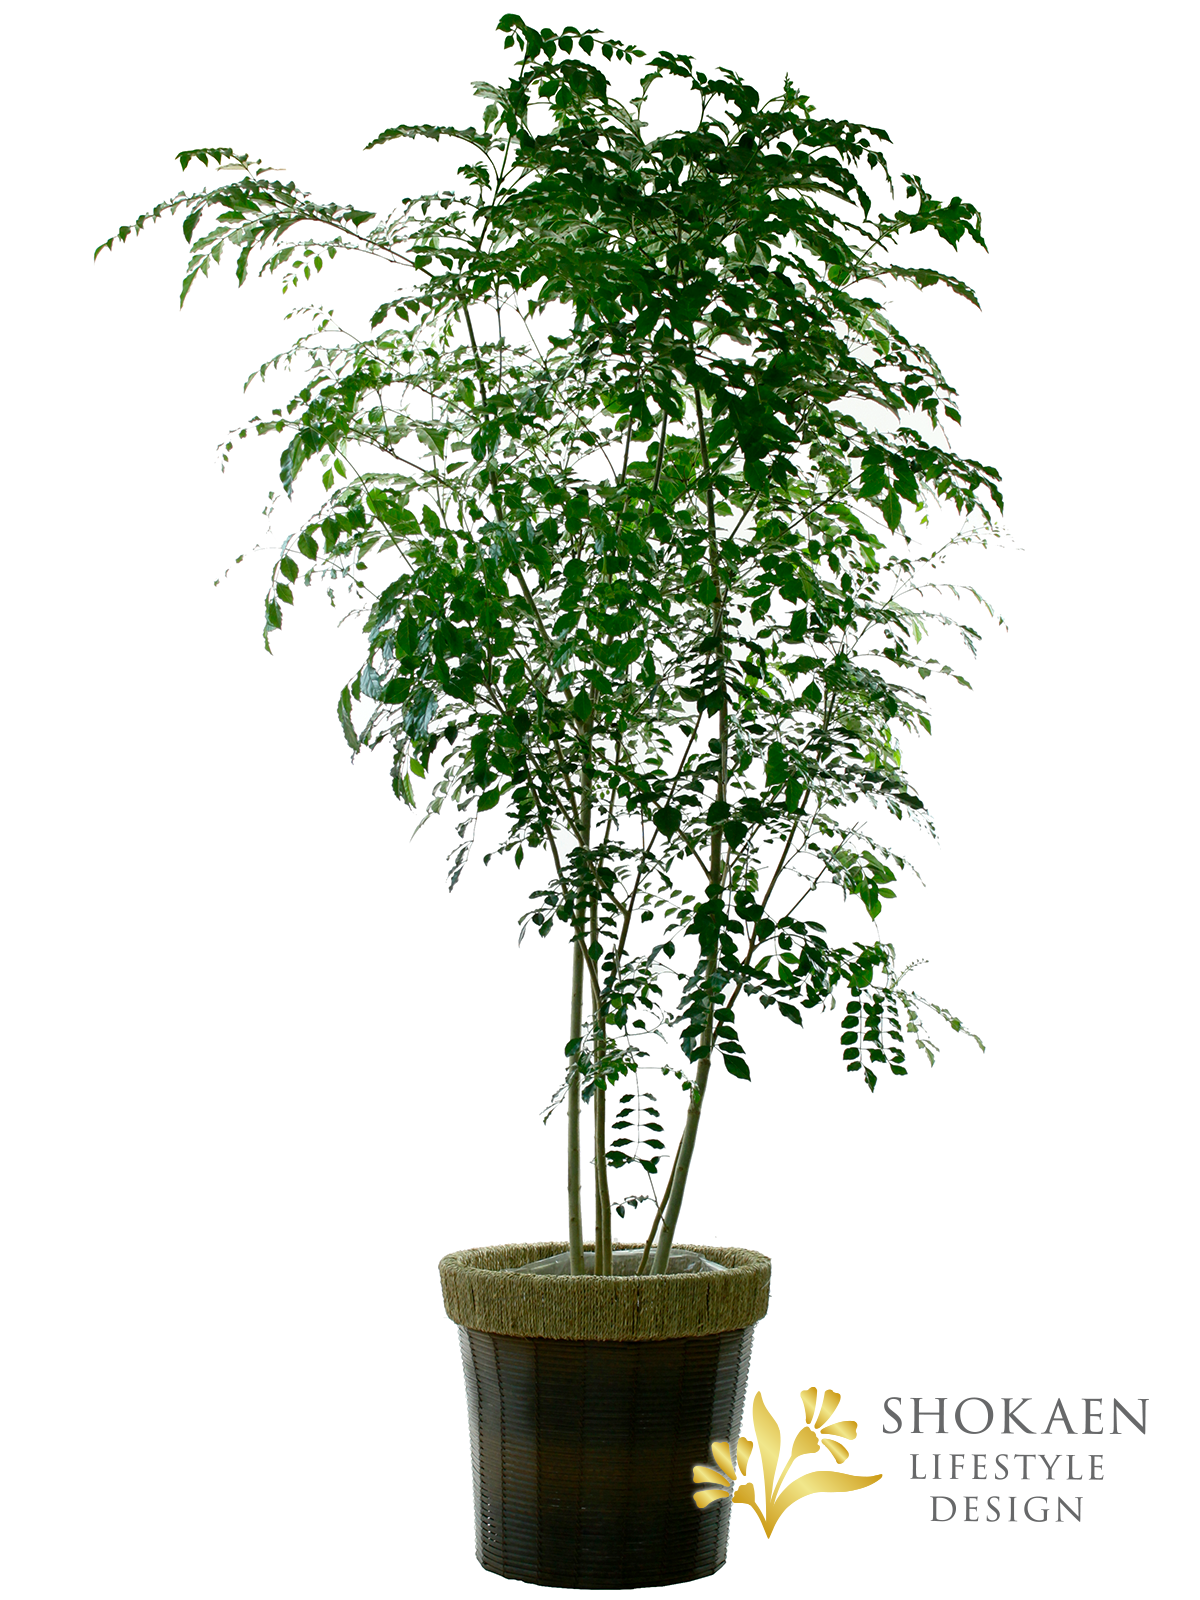 【観葉植物】シマトネリコ10寸尺鉢商品画像01